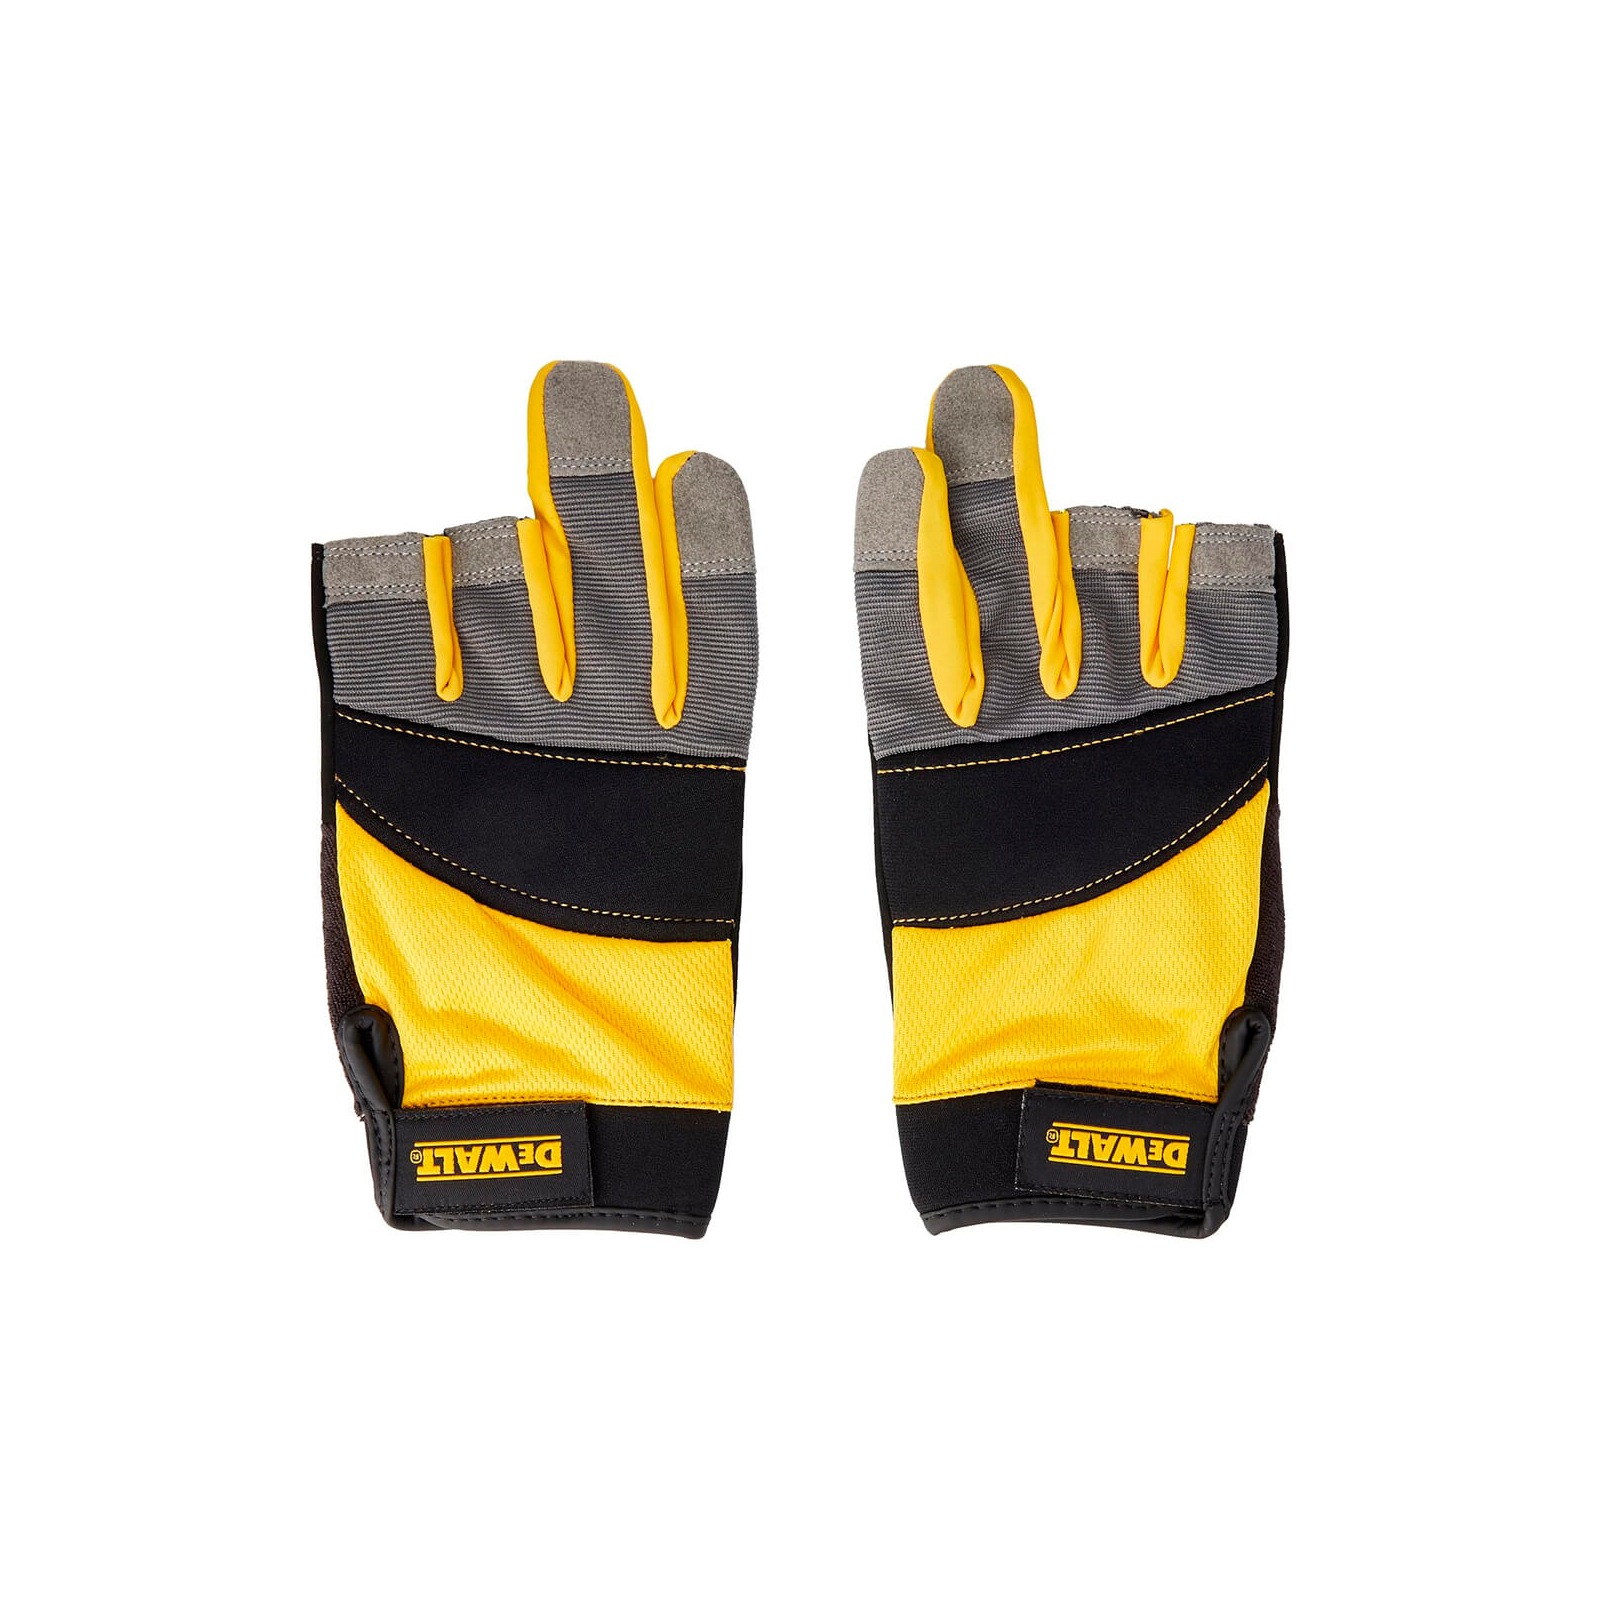 Захисні рукавиці DeWALT частково відкриті, розм. L/9, з накладками на долоні (DPG214L)